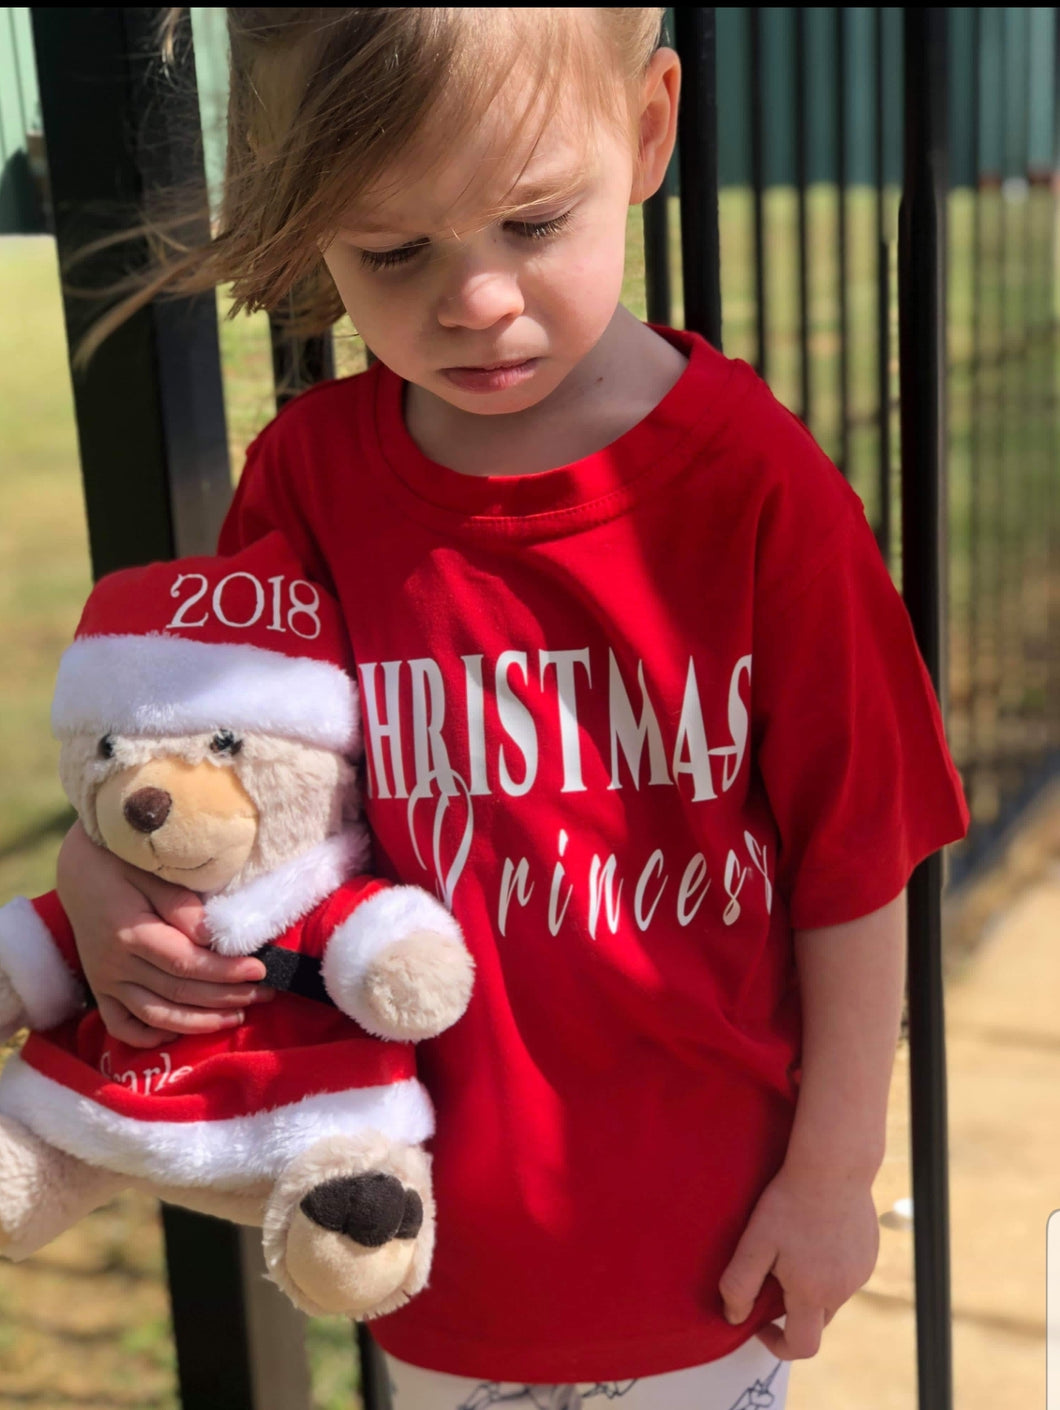 Christmas princess/Prince t-shirt